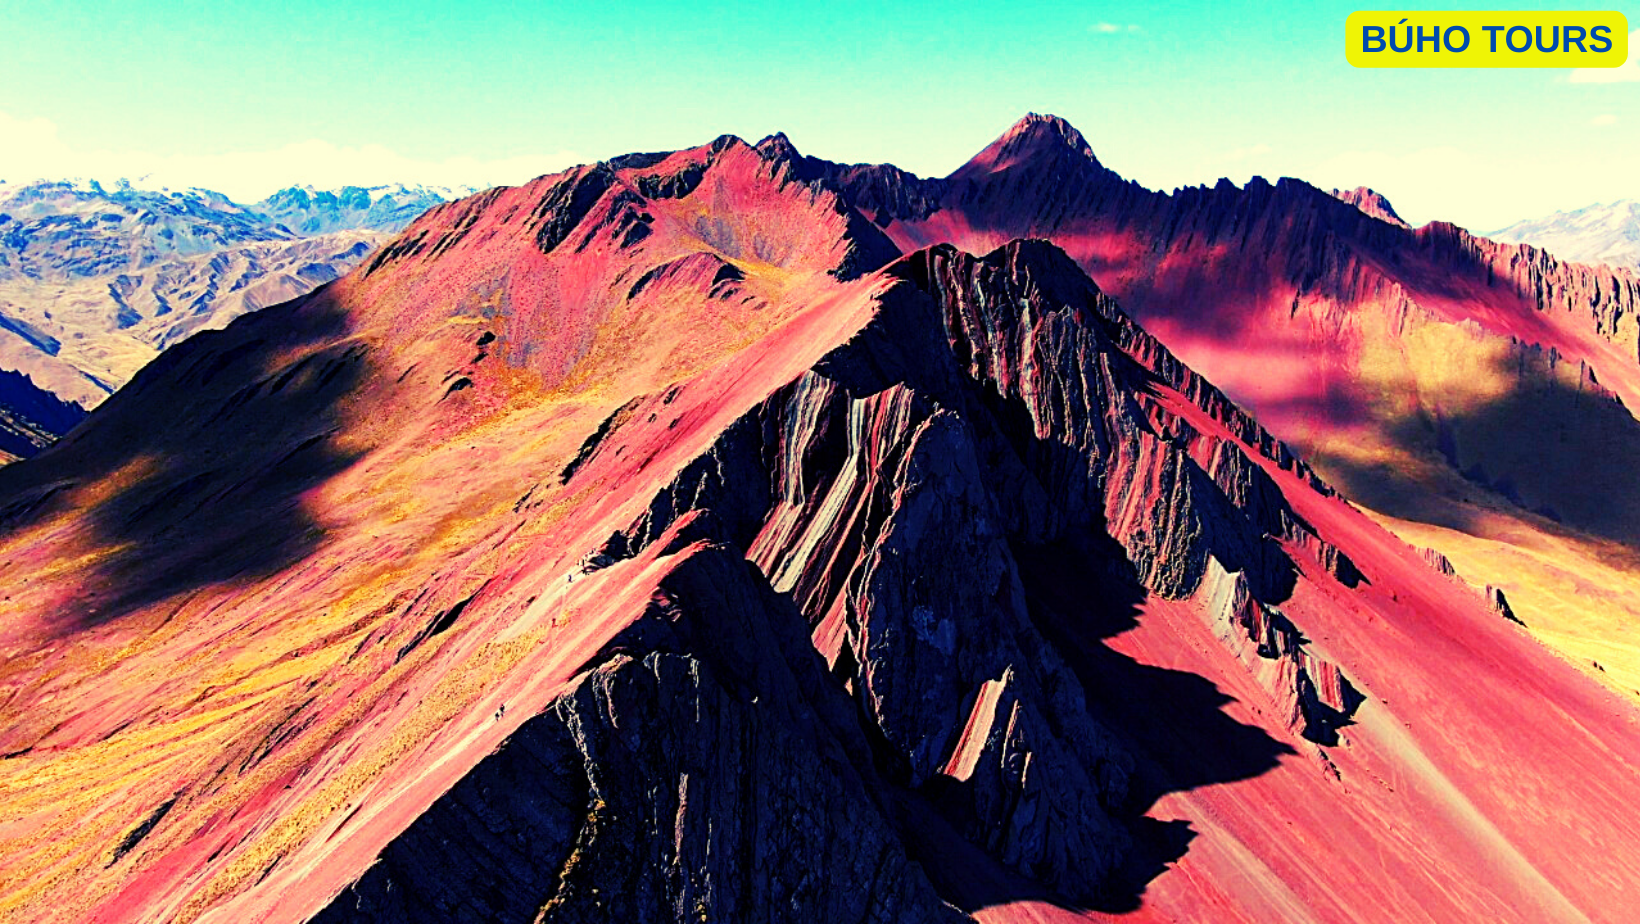 Pallay Punchu Nueva Montaña de Colores Impresionante en Cusco.